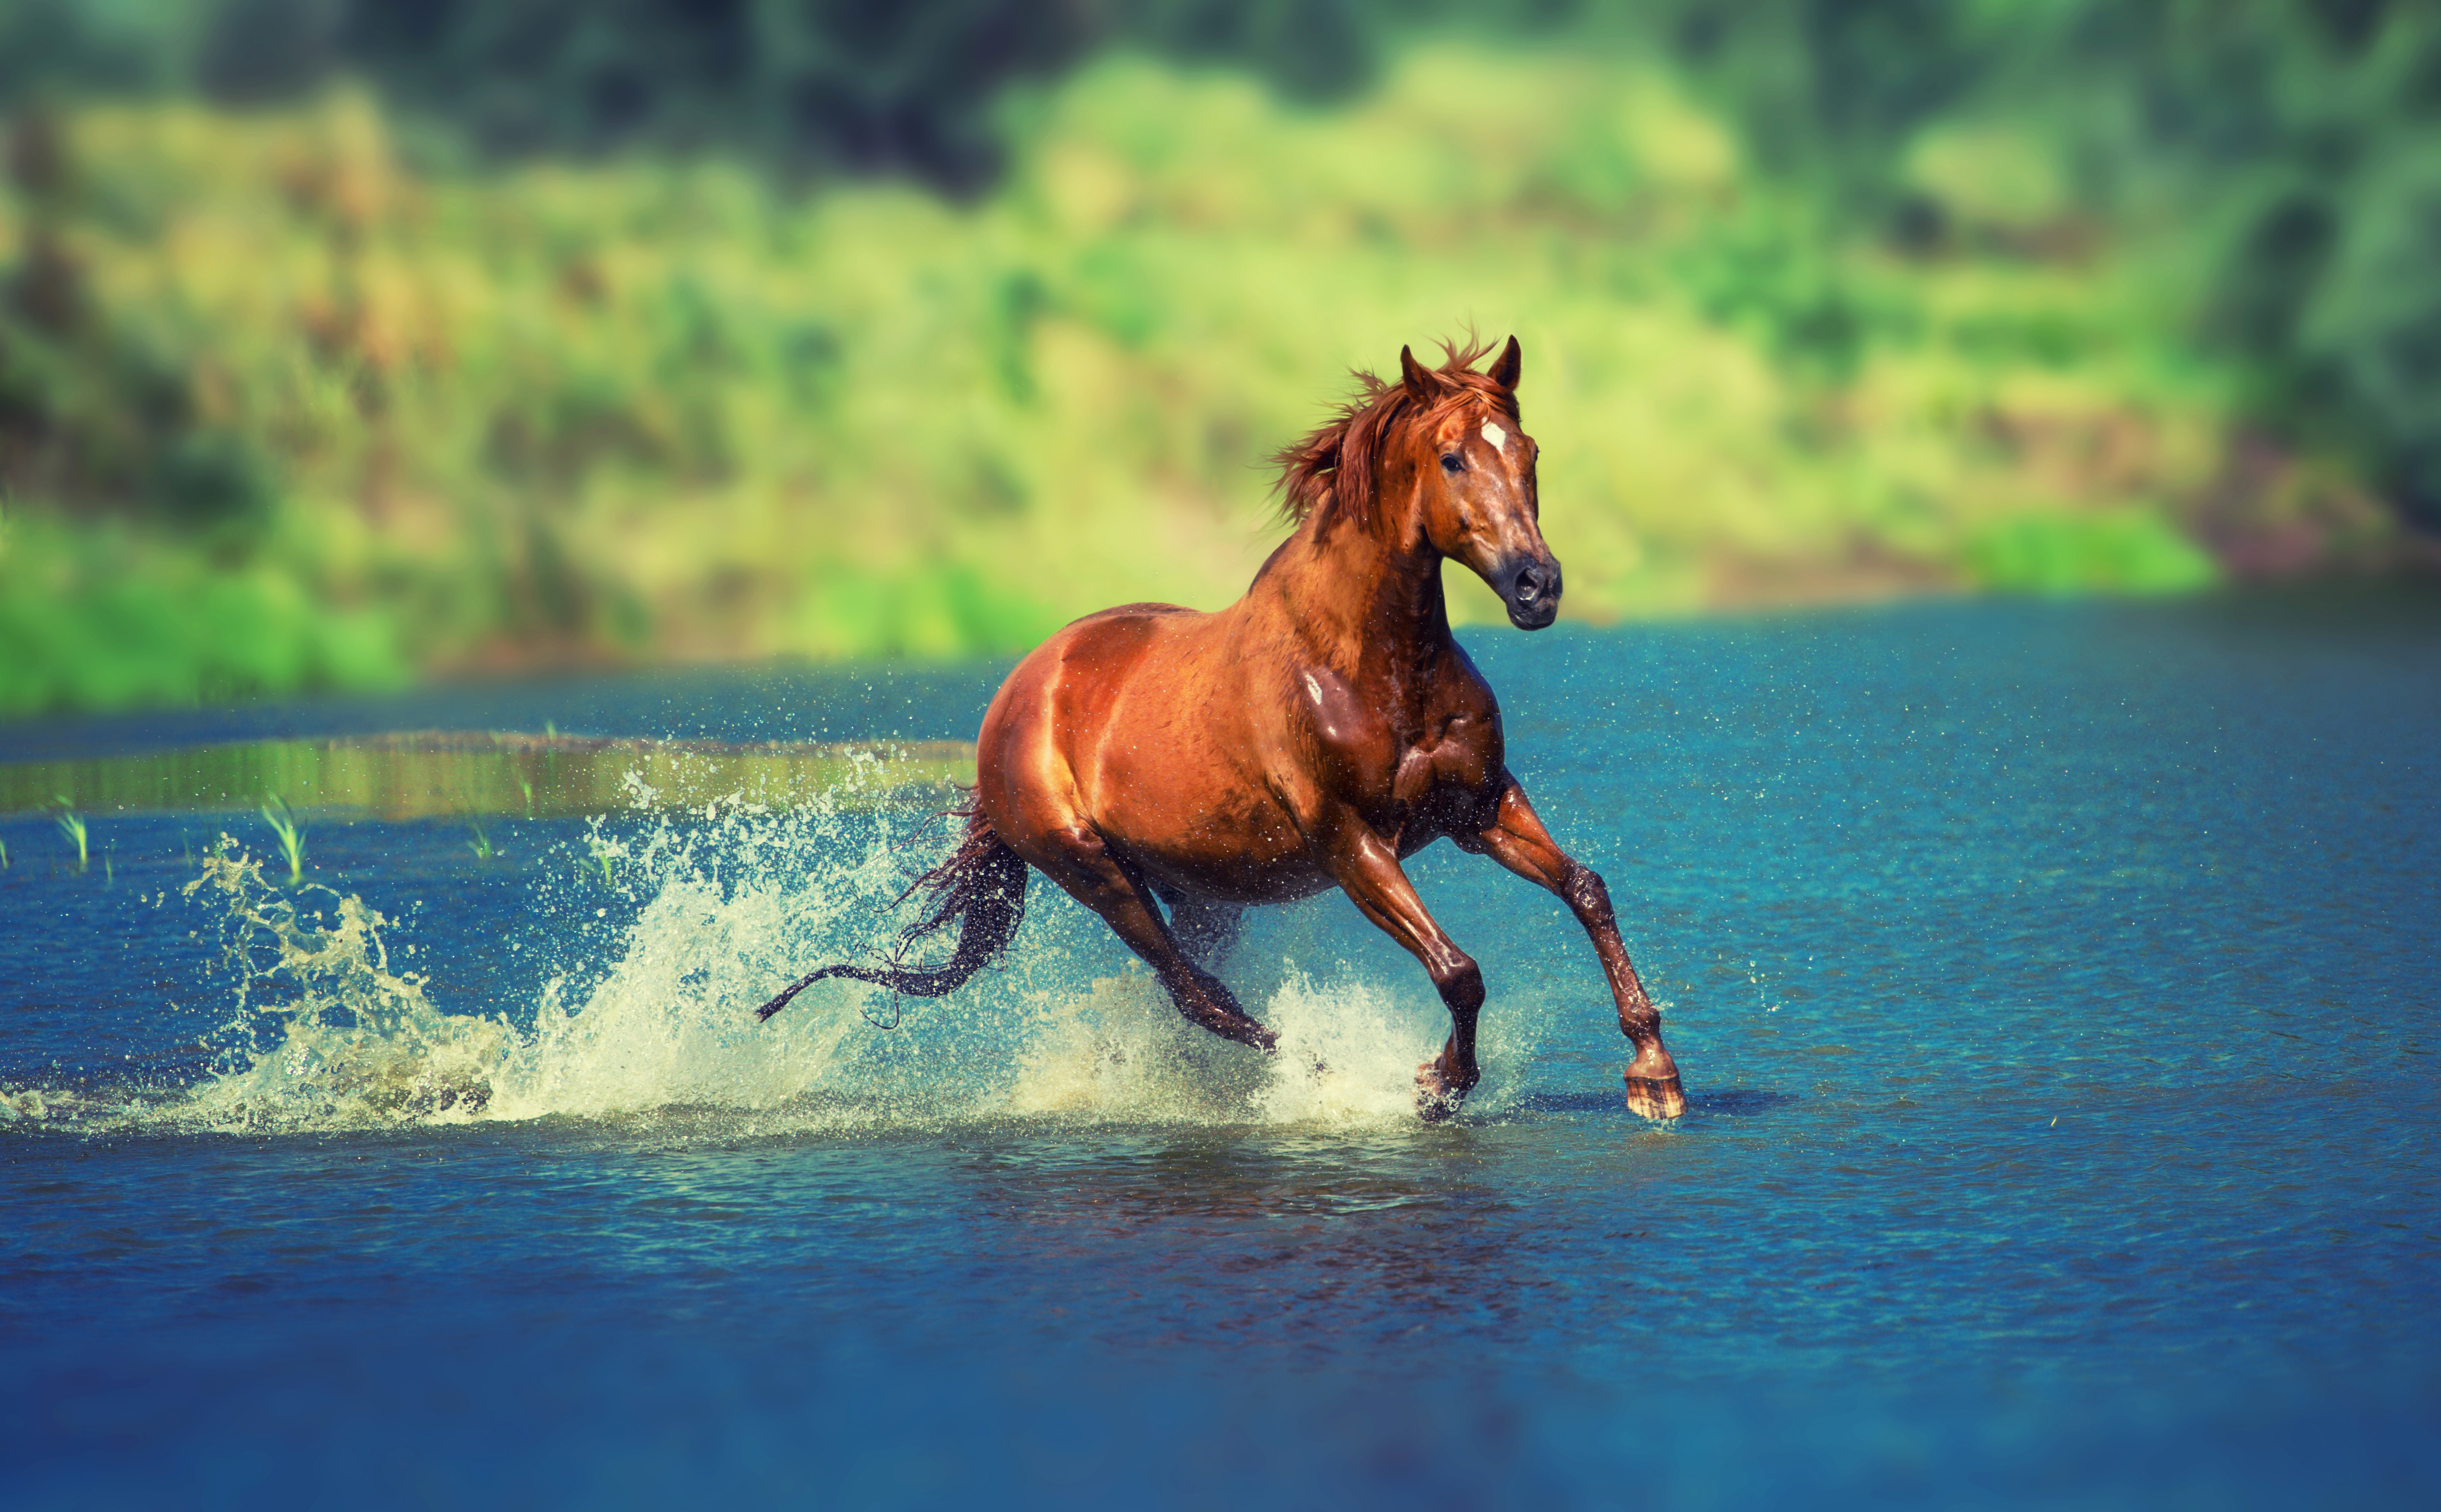 Картинки лошадей на заставку. Лошадь бежит. Лошади на природе. Красивые лошади. Лошадь бежит по воде.